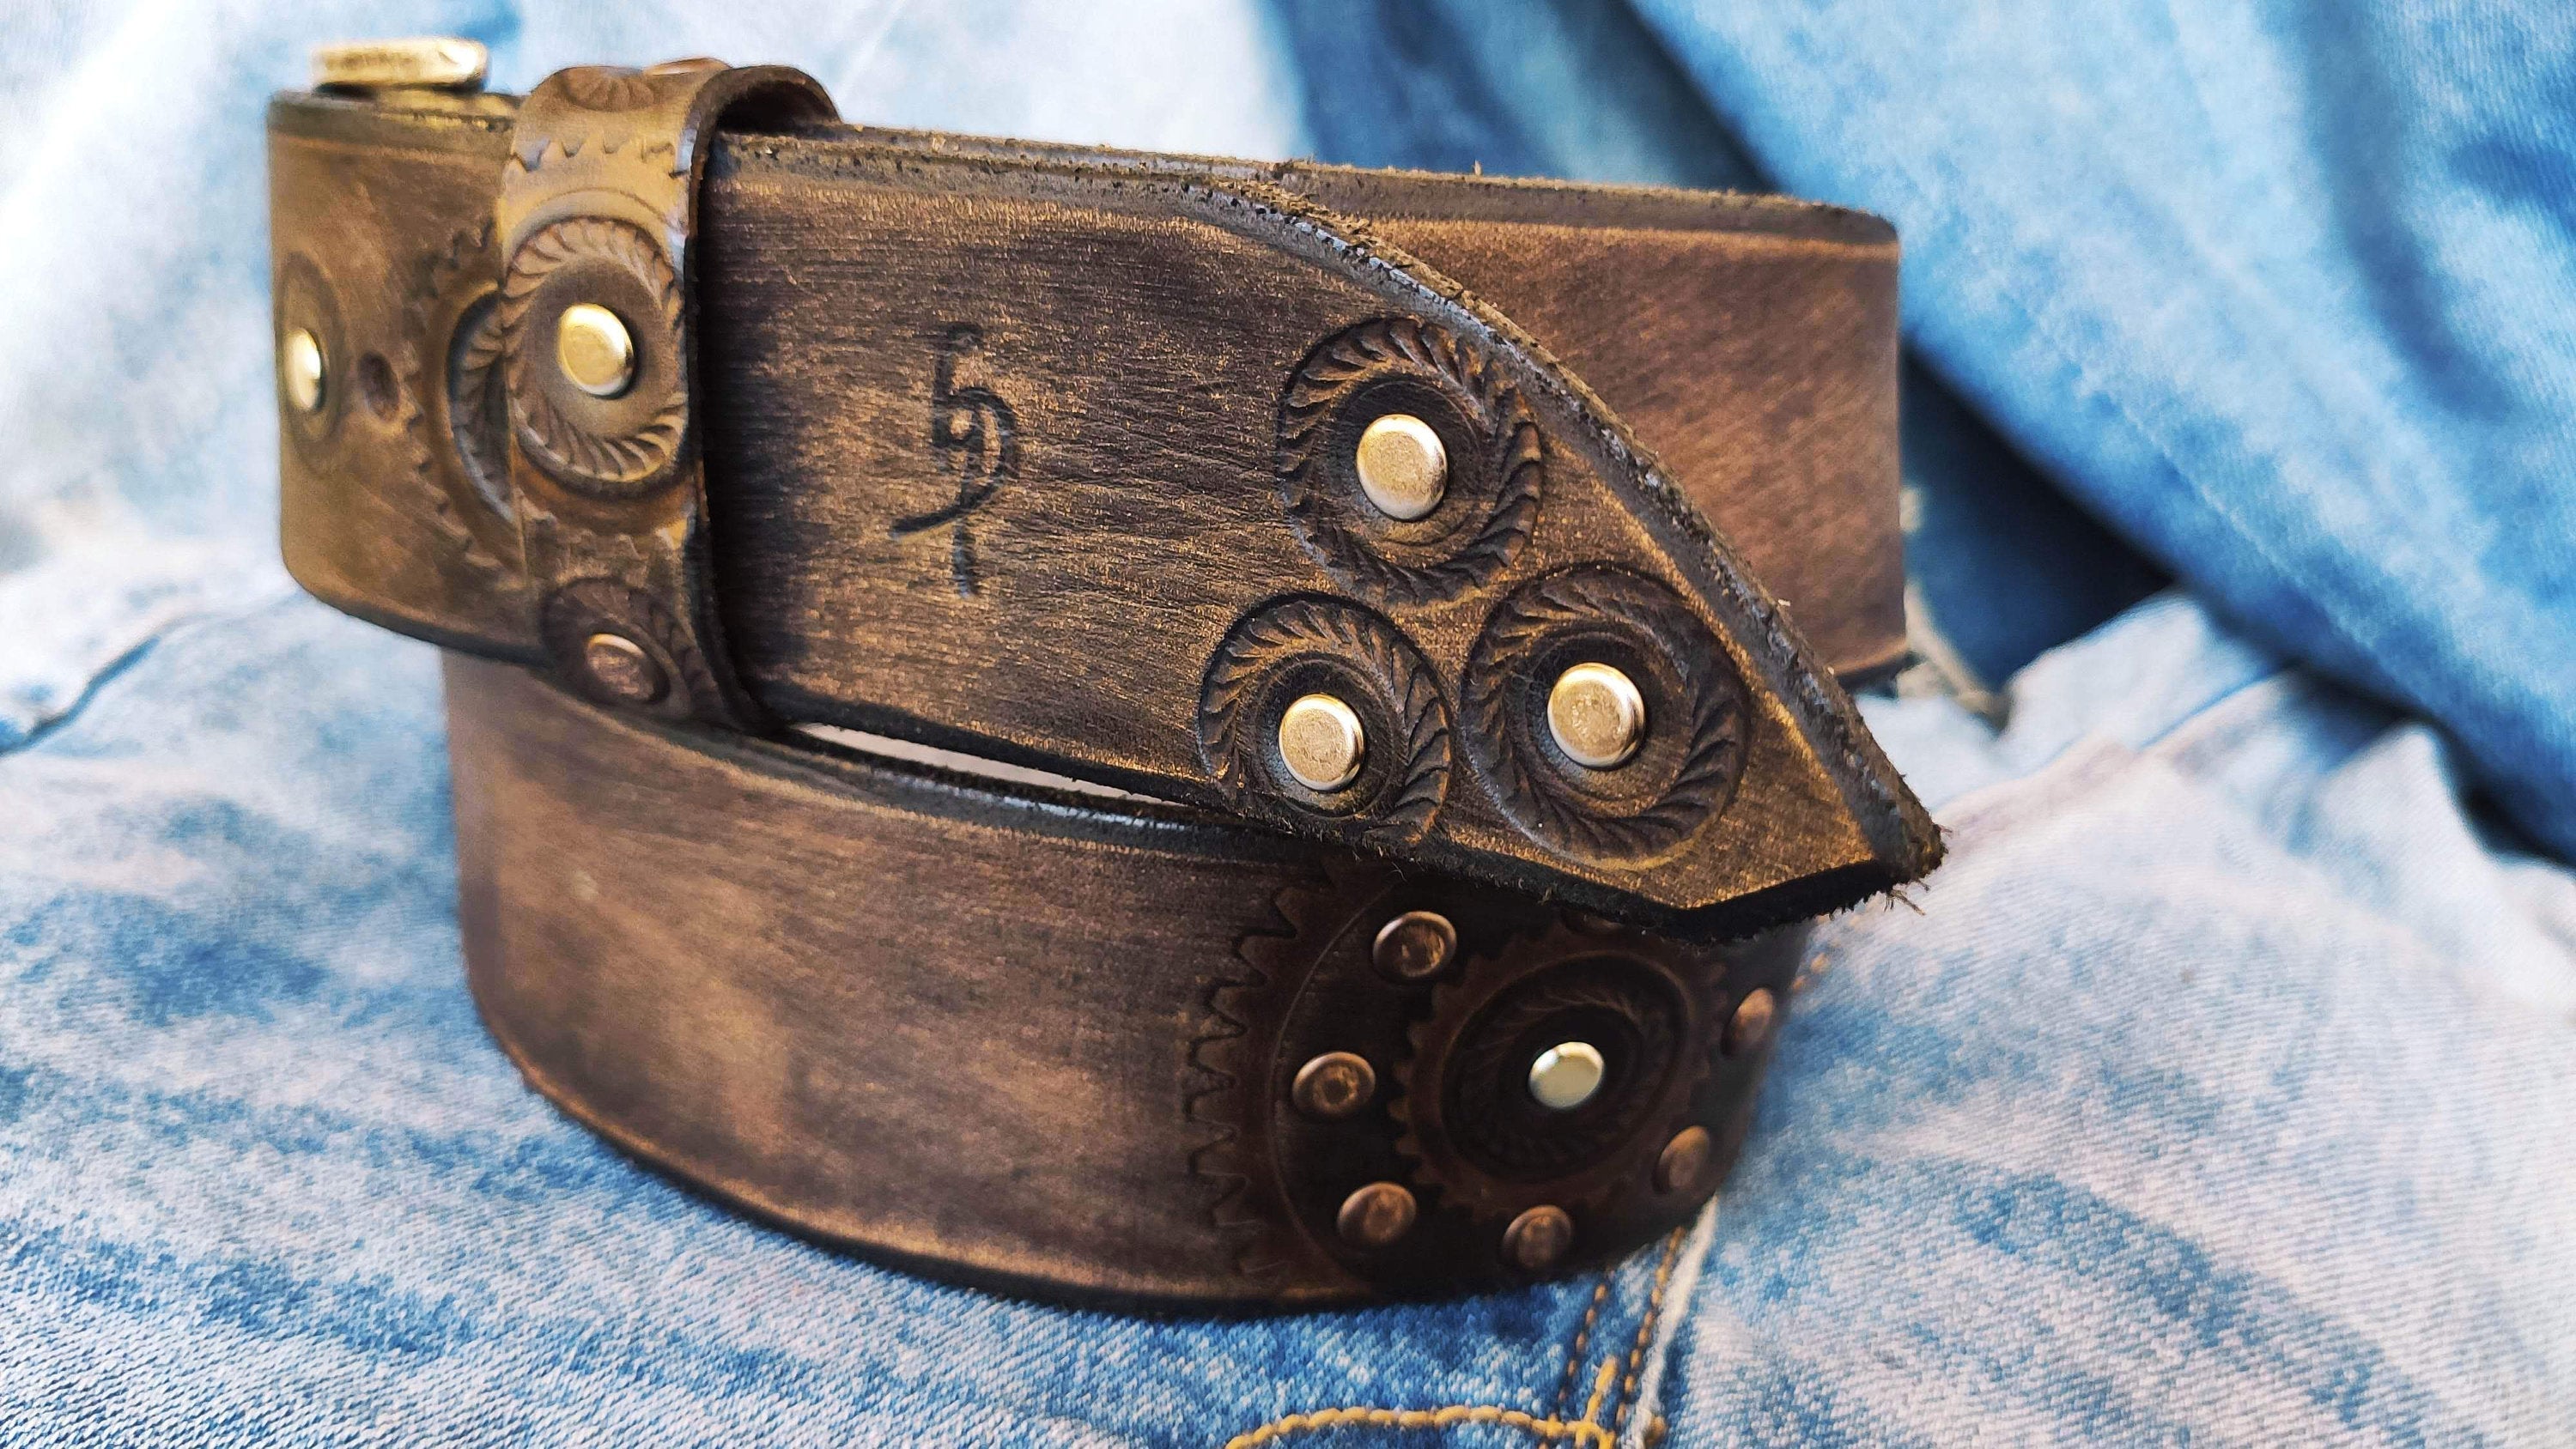 Leather Belt Designer Belts Fashion Belt Fashion Accessories Belt